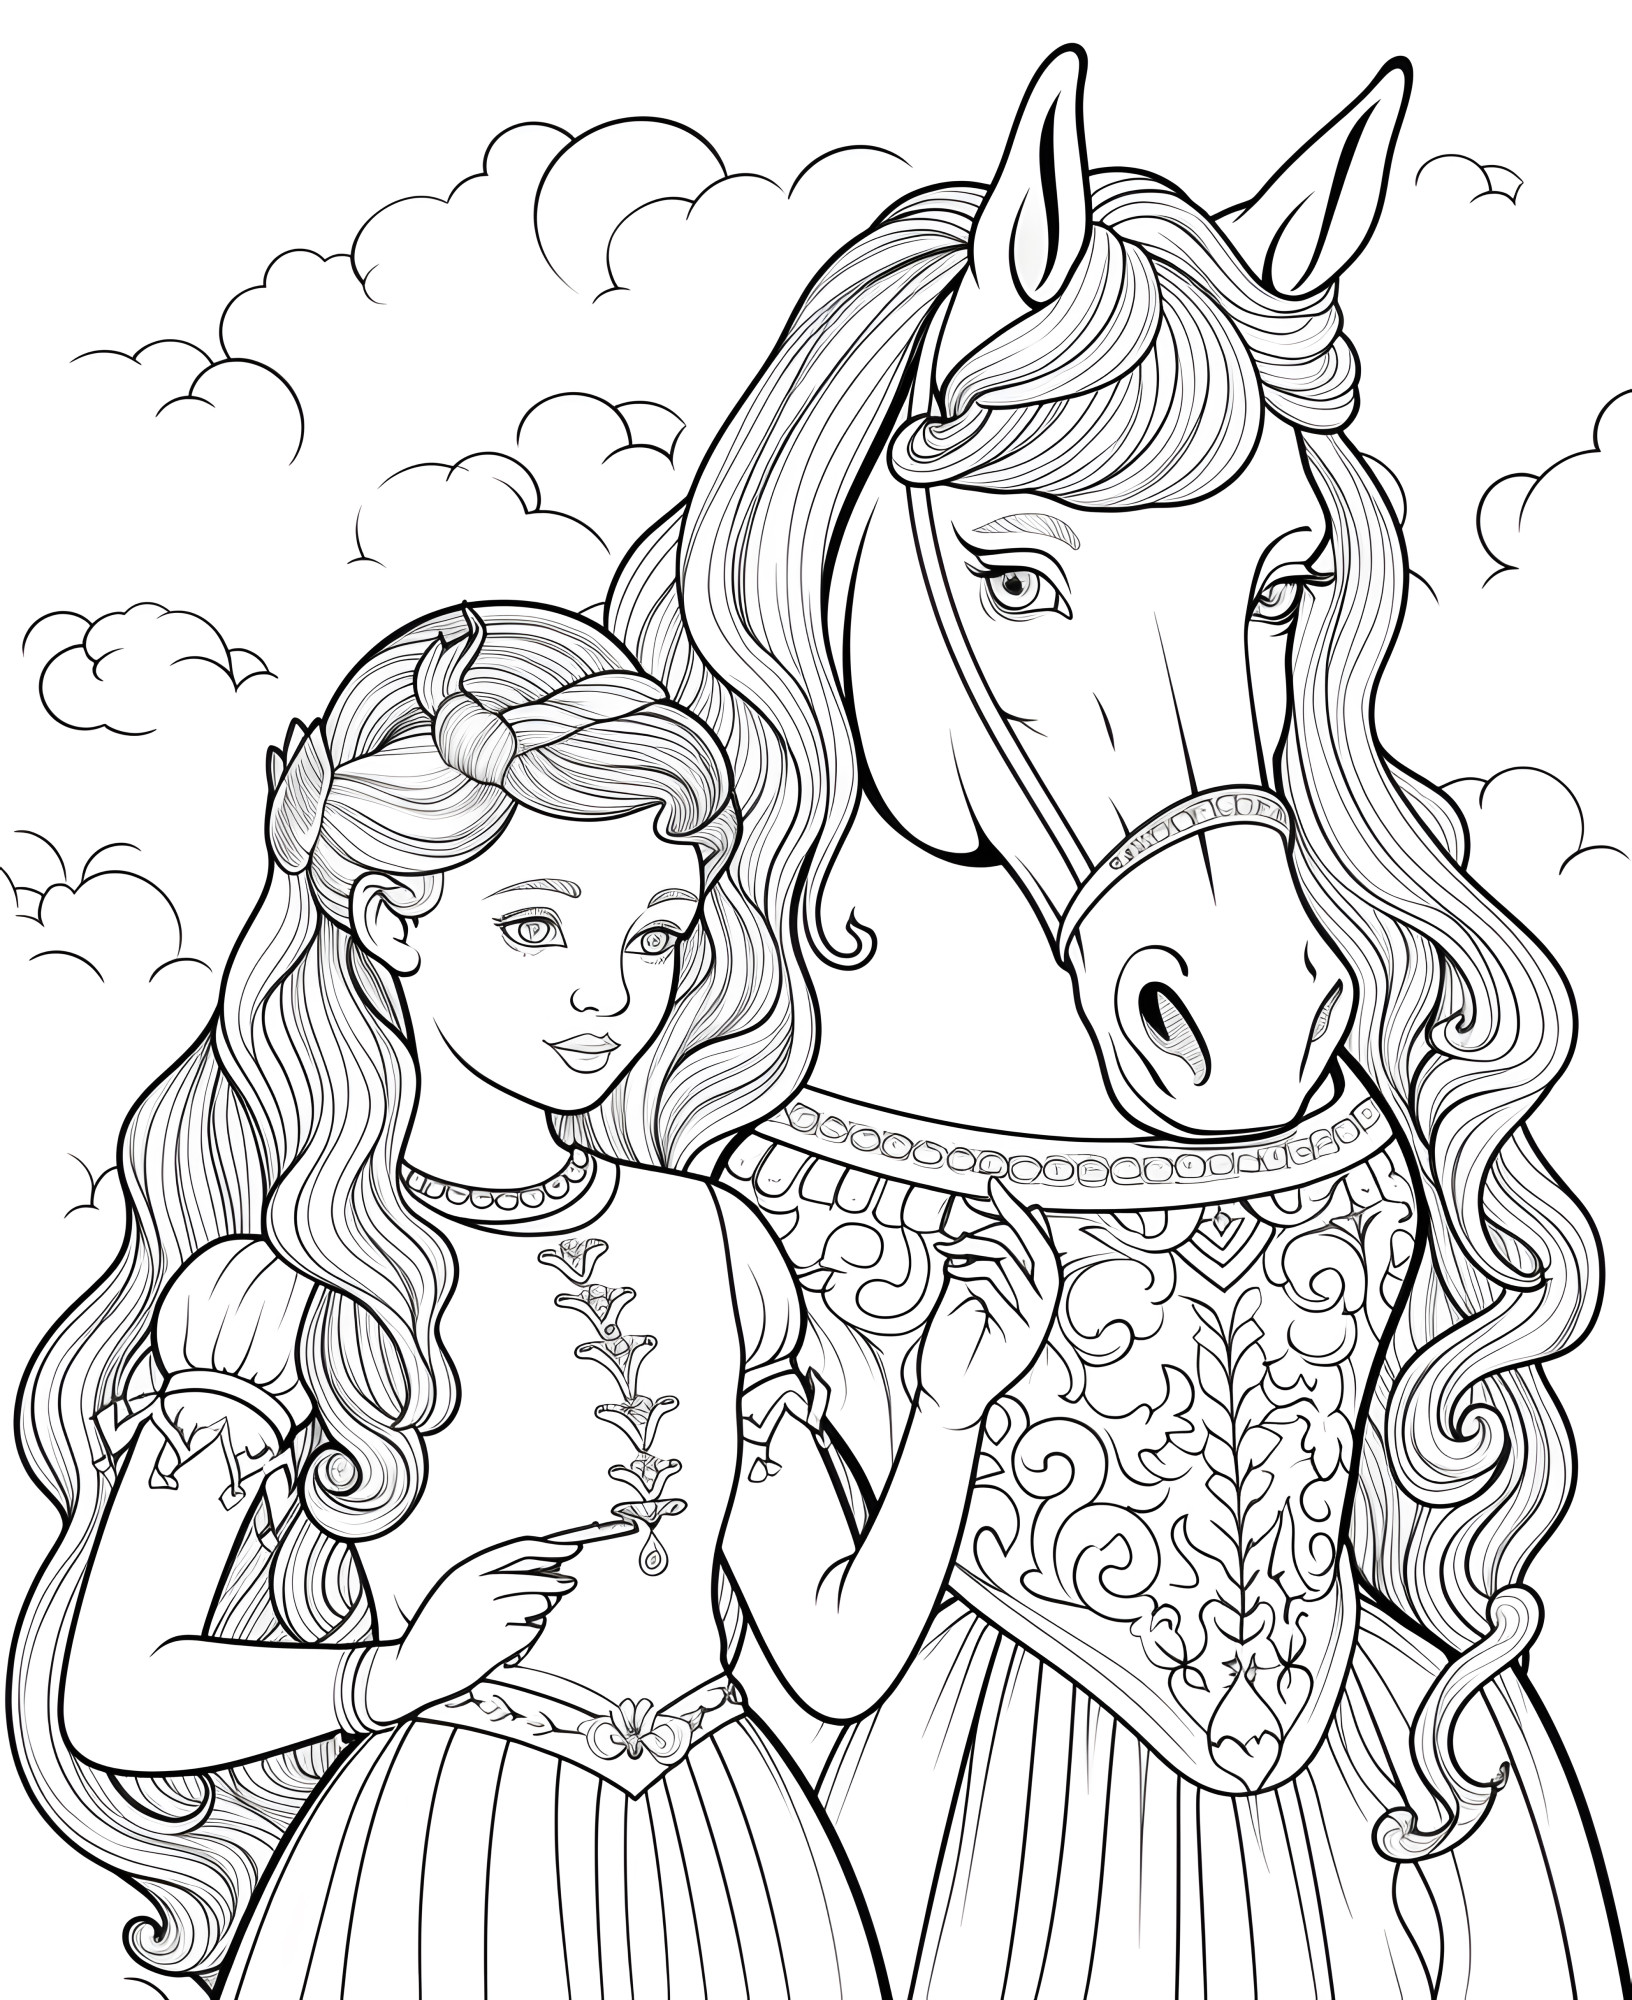 Раскраска для детей: волшебная принцесса с конем